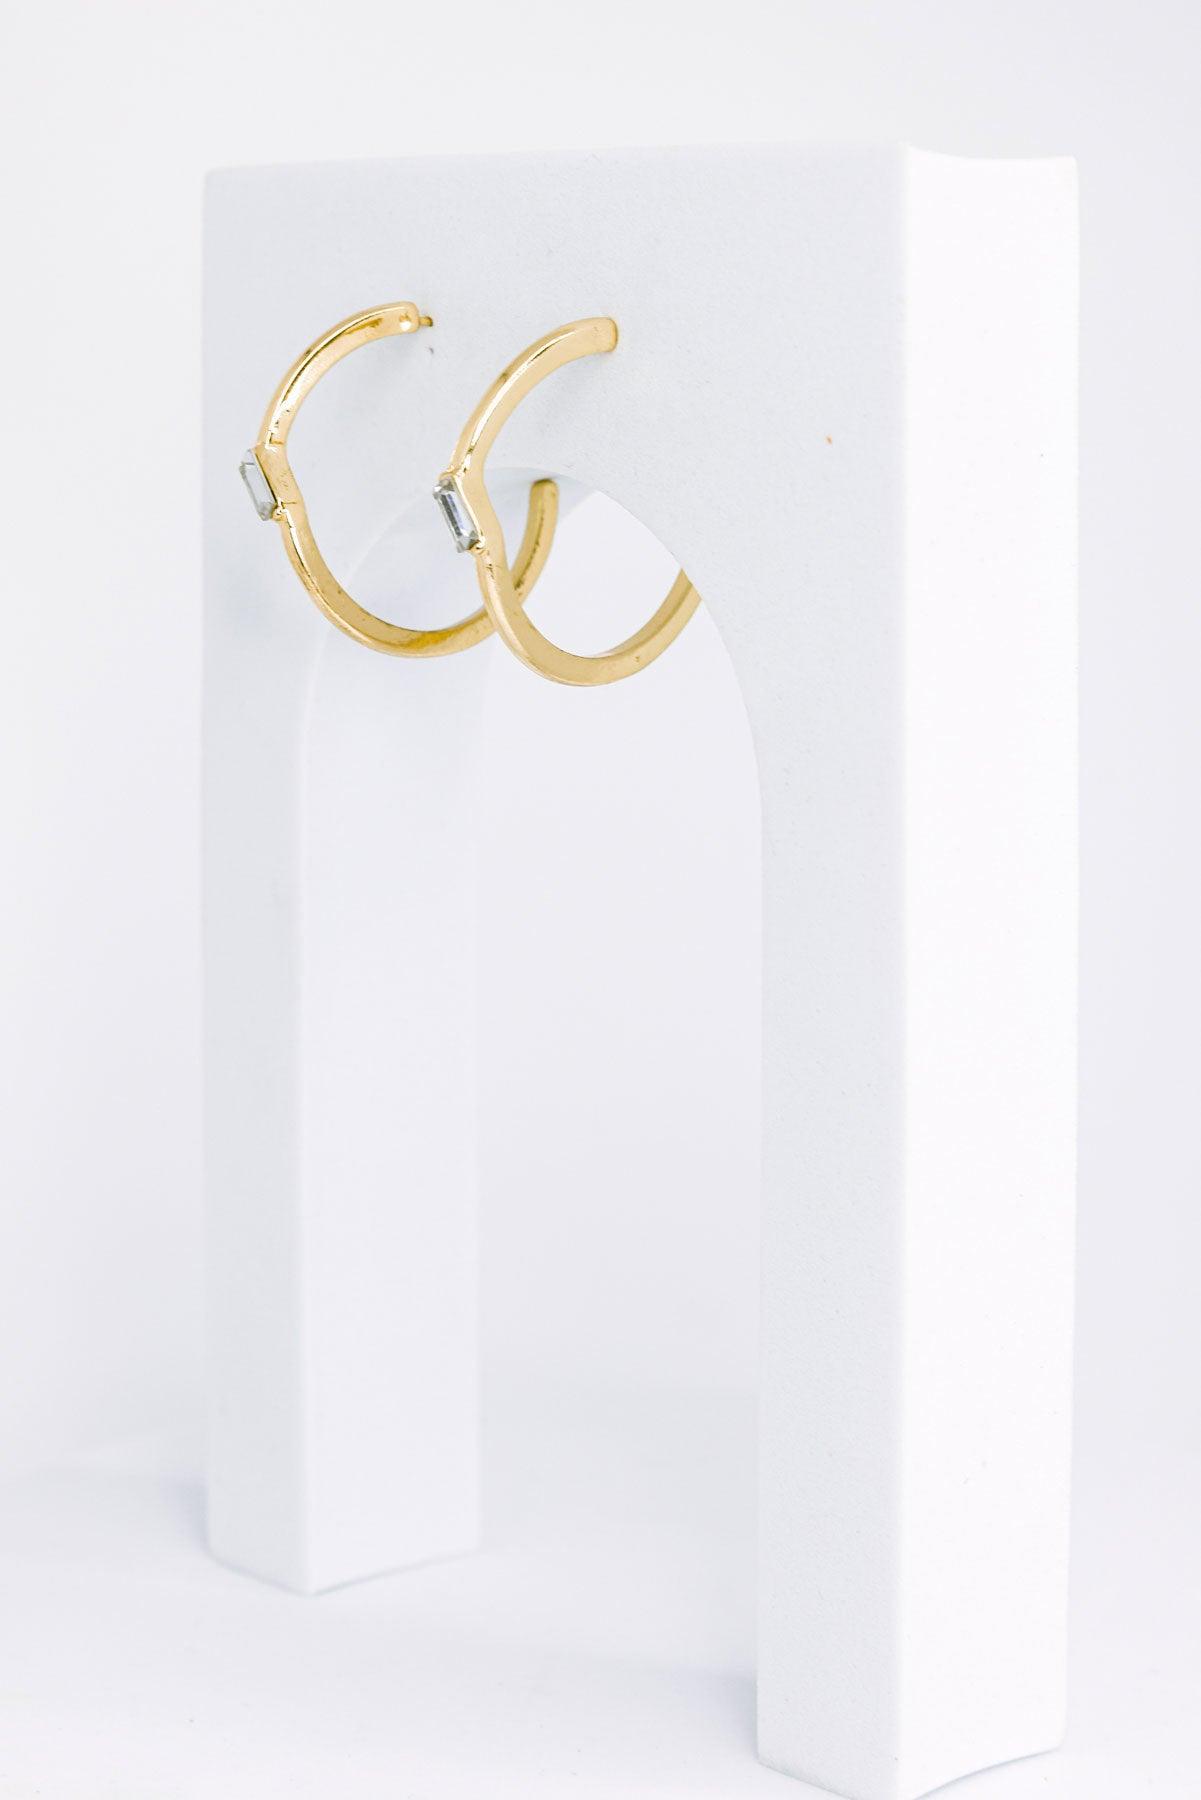 Baguette Rhinestone Round Open Hoop Gold Earrings - Tasha Apparel Wholesale